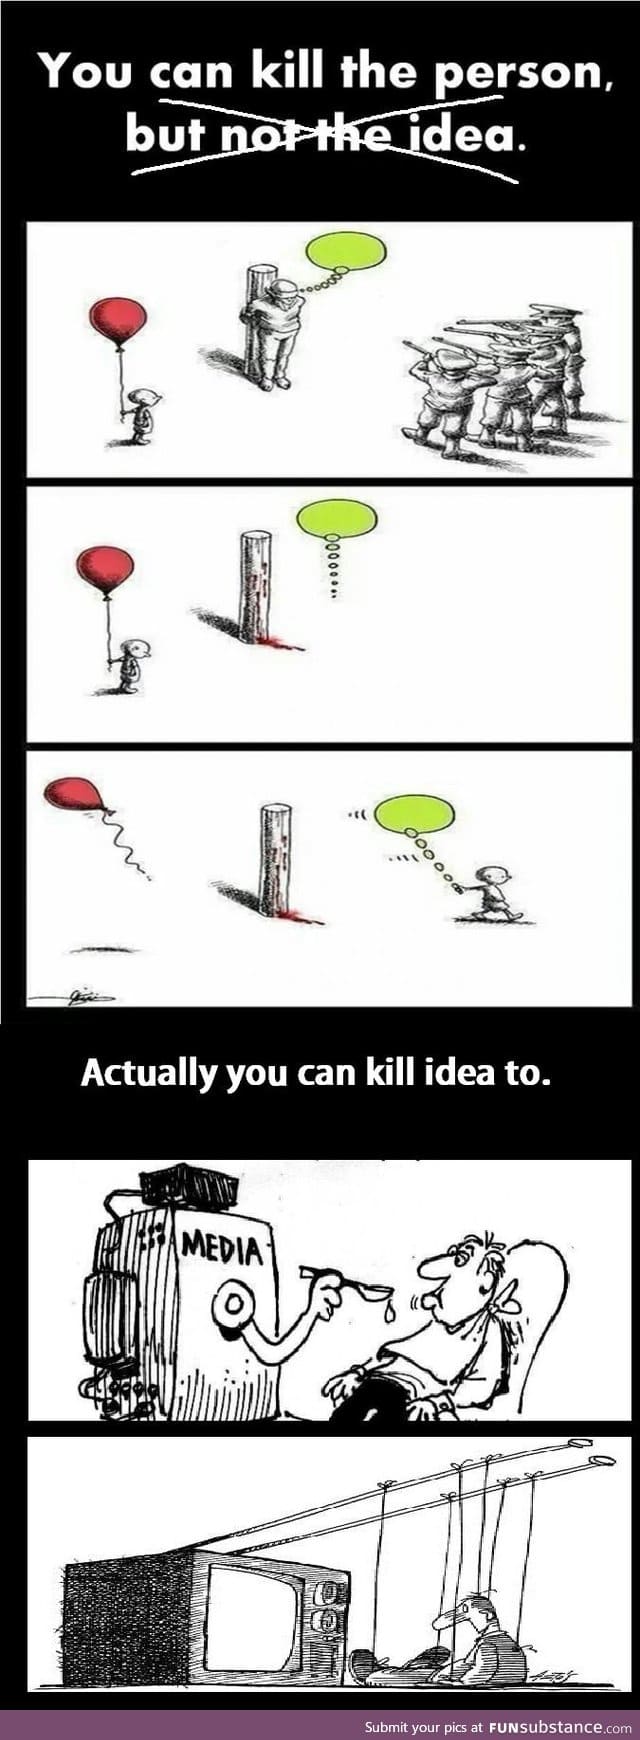 You can kill idea too